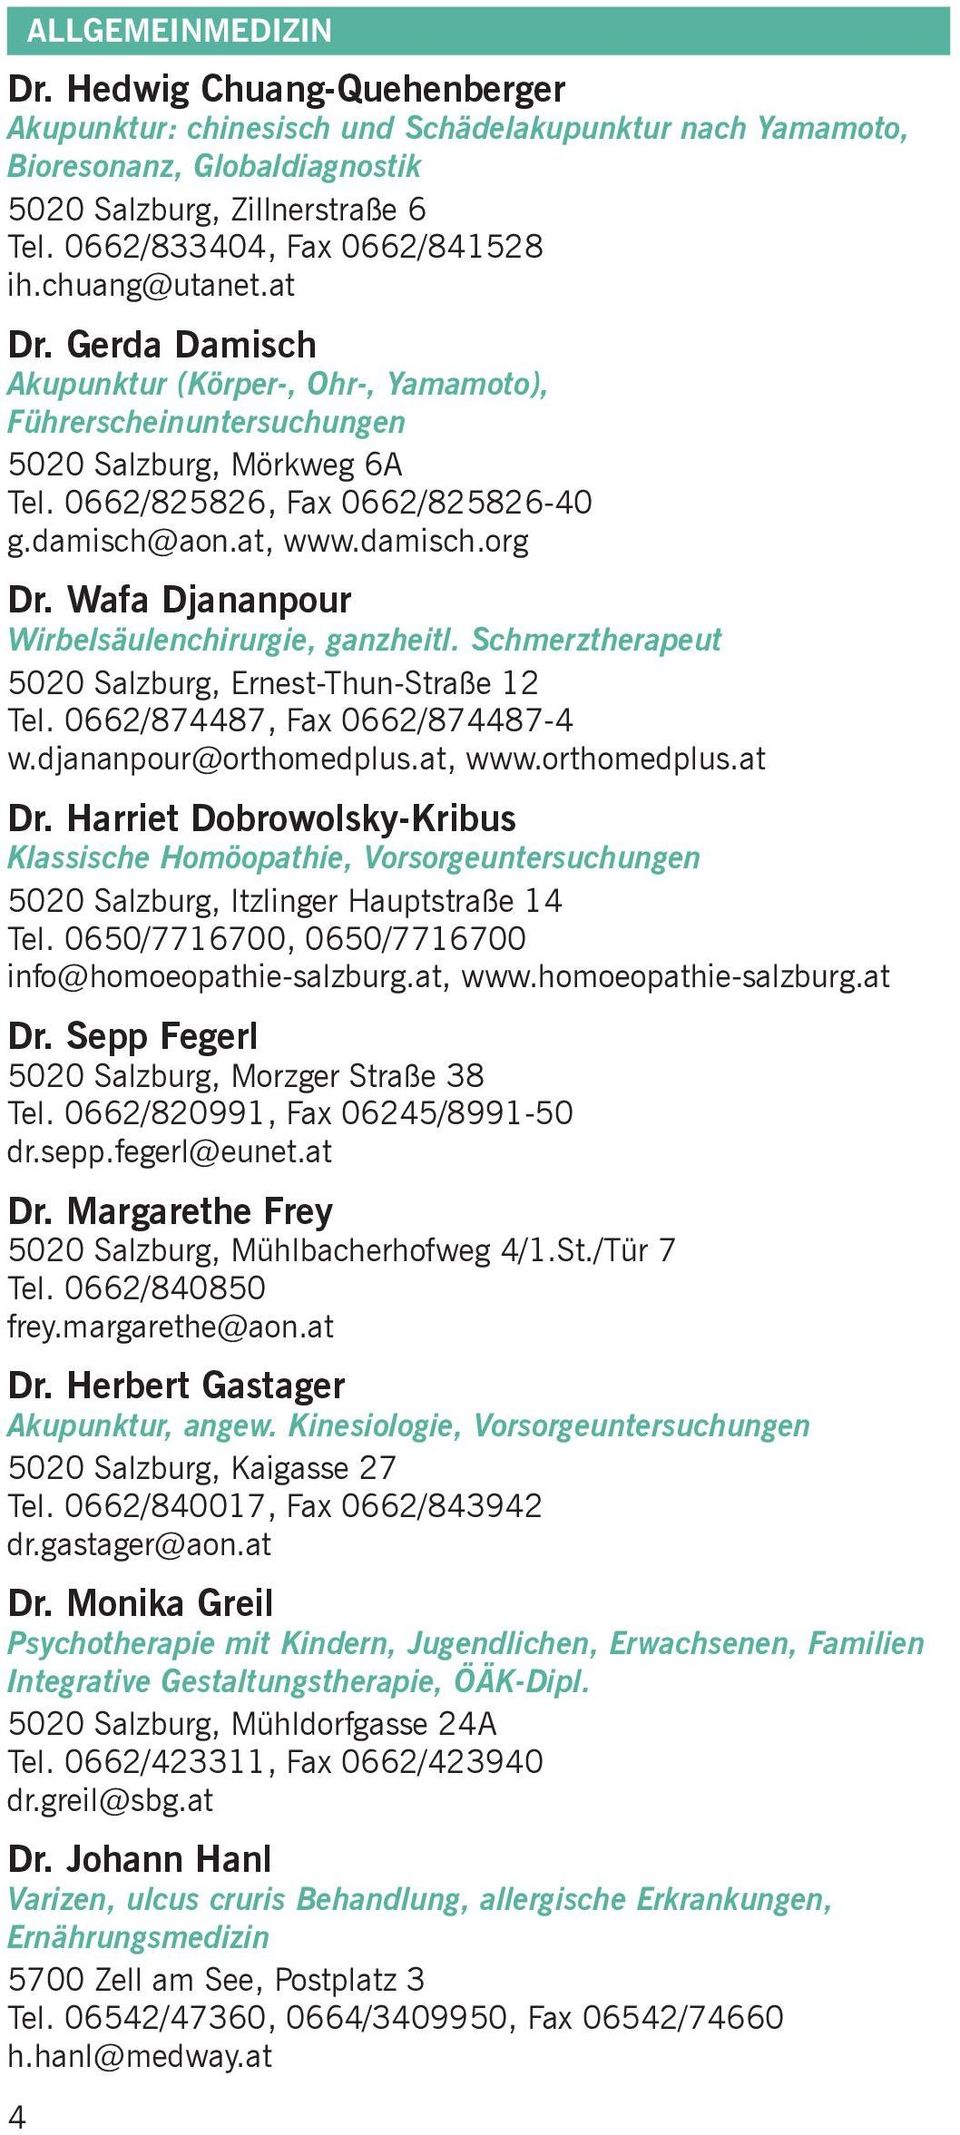 damisch@aon.at, www.damisch.org Dr. Wafa Djananpour Wirbelsäulenchirurgie, ganzheitl. Schmerztherapeut 5020 Salzburg, Ernest-Thun-Straße 12 Tel. 0662/874487, Fax 0662/874487-4 w.